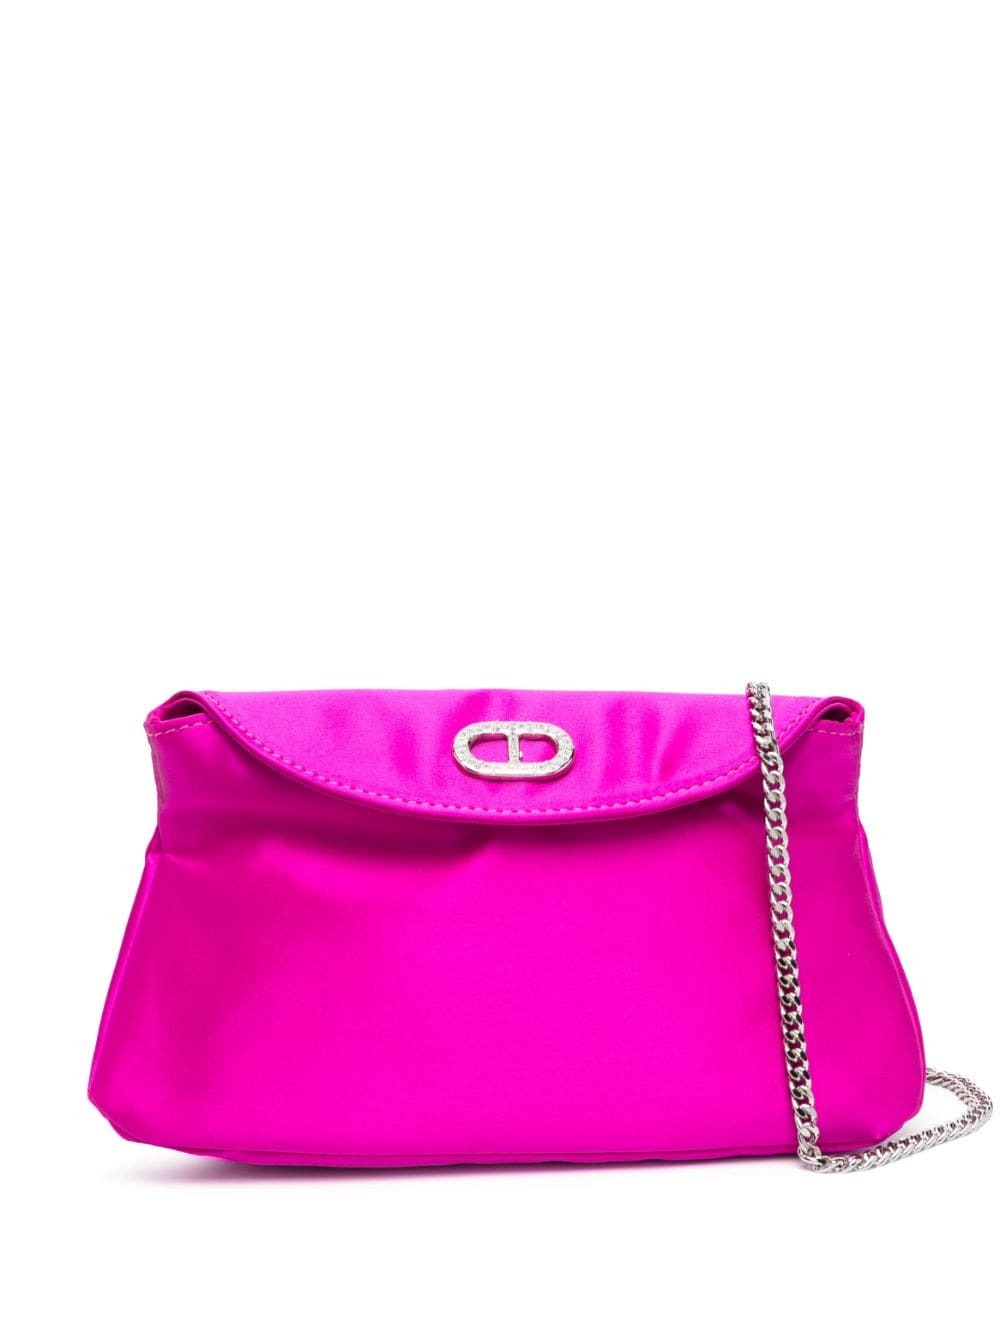 Dee Ocleppo New York silk-satin clutch bag - Pink